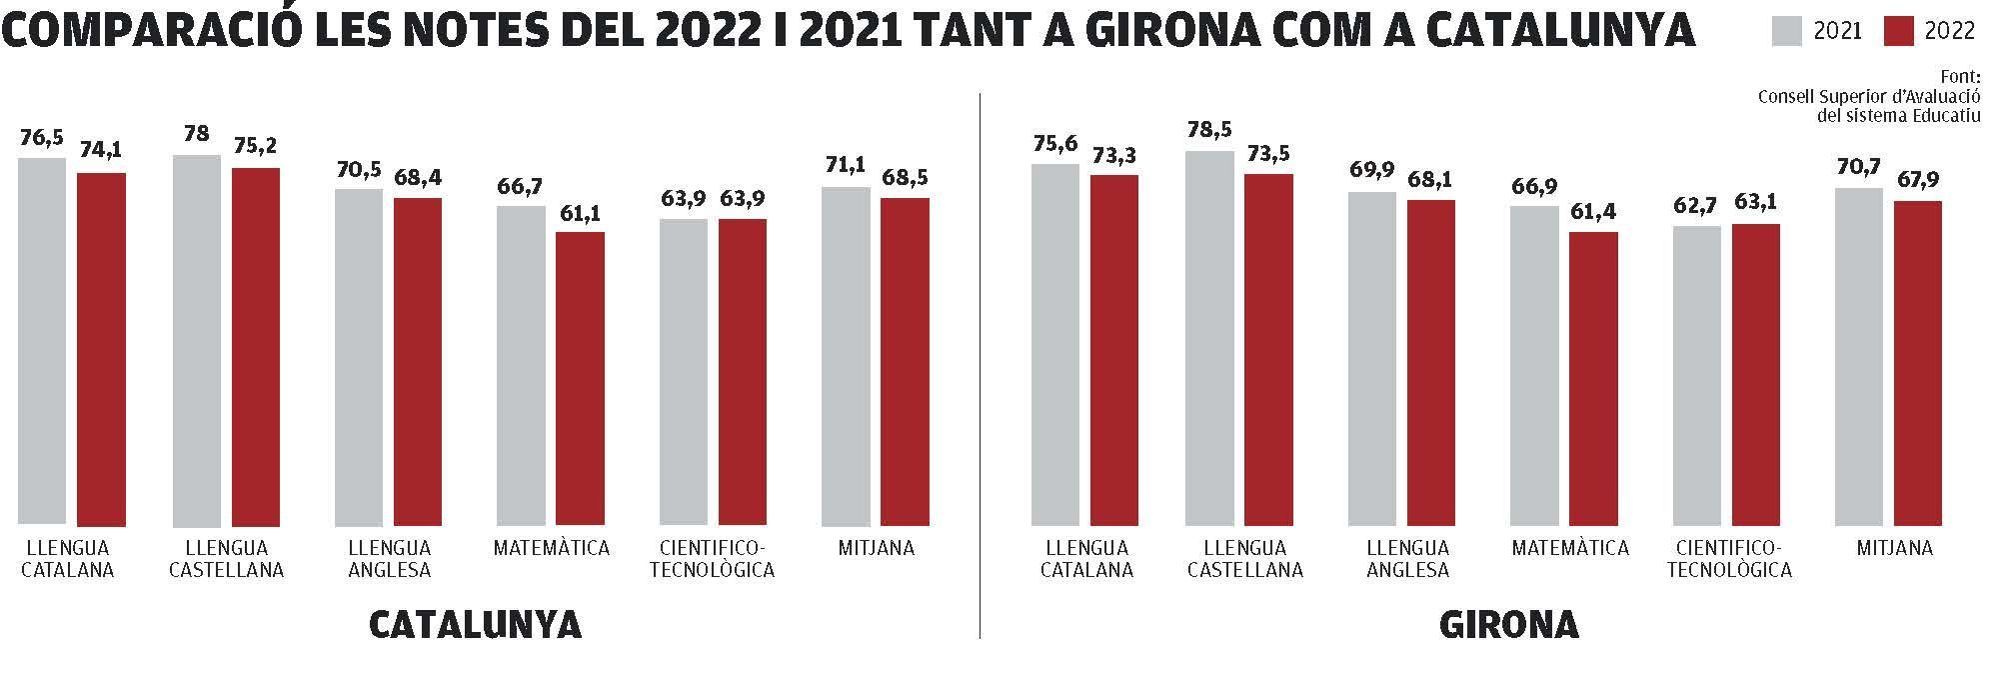 Comparació de les notes del 2022 i 2021 tant a Girona com a Catalunya